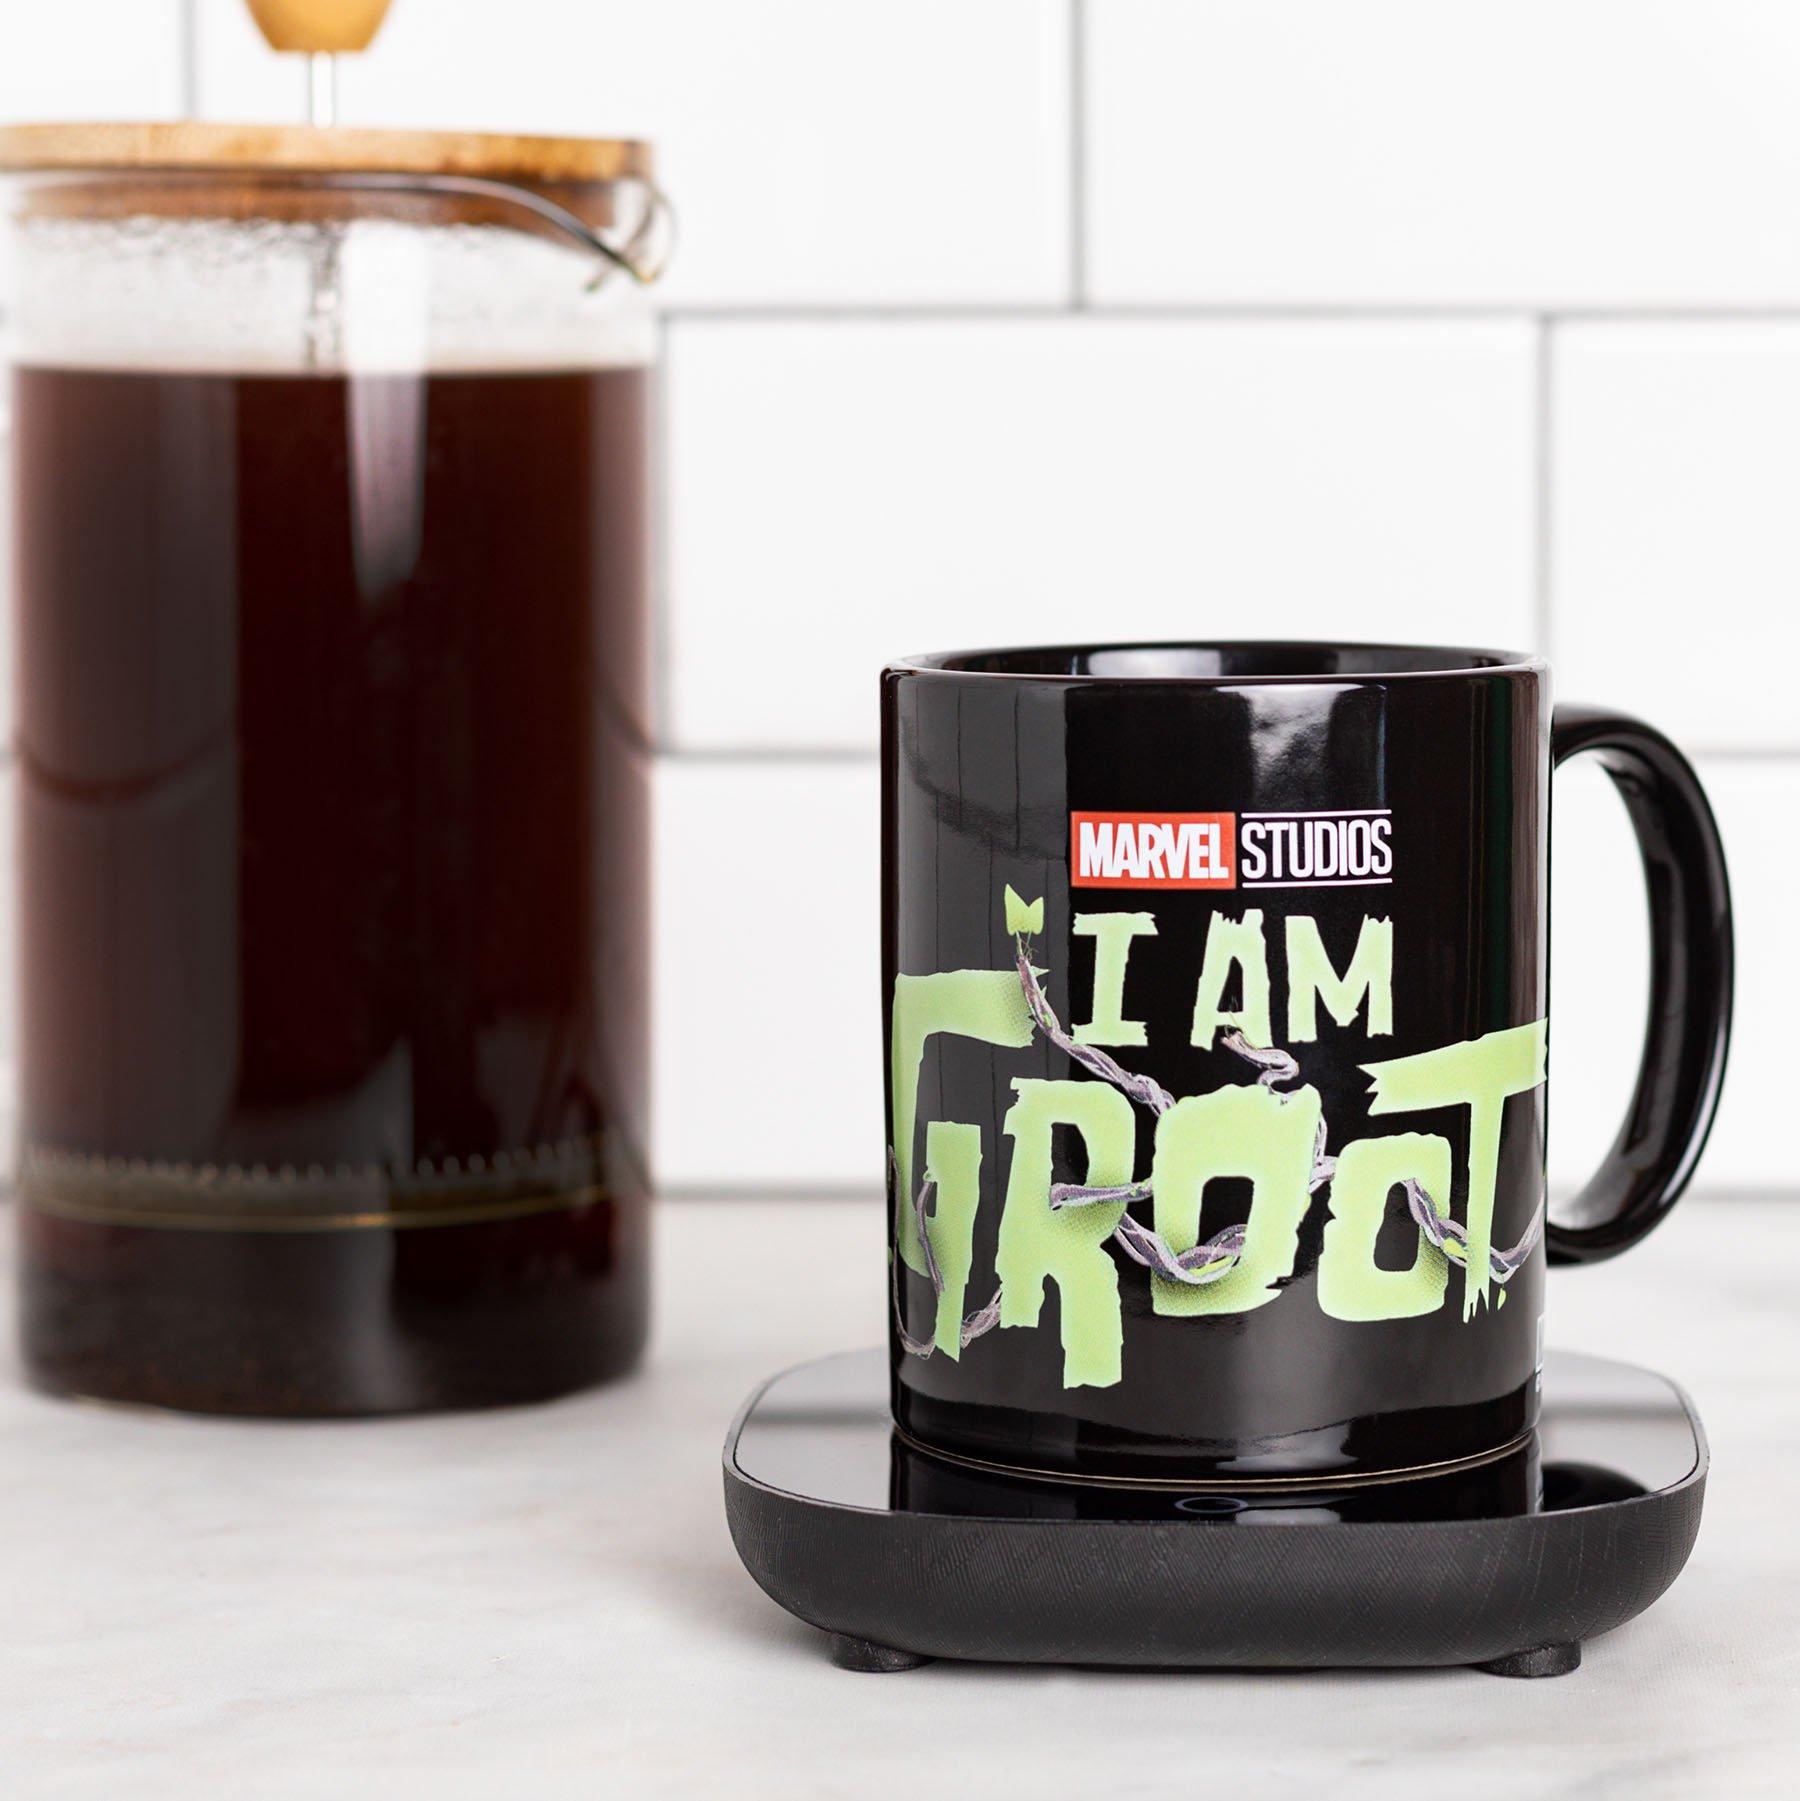 Uncanny Brands Marvel I Am Groot Mug Warmer with Mug – Keeps